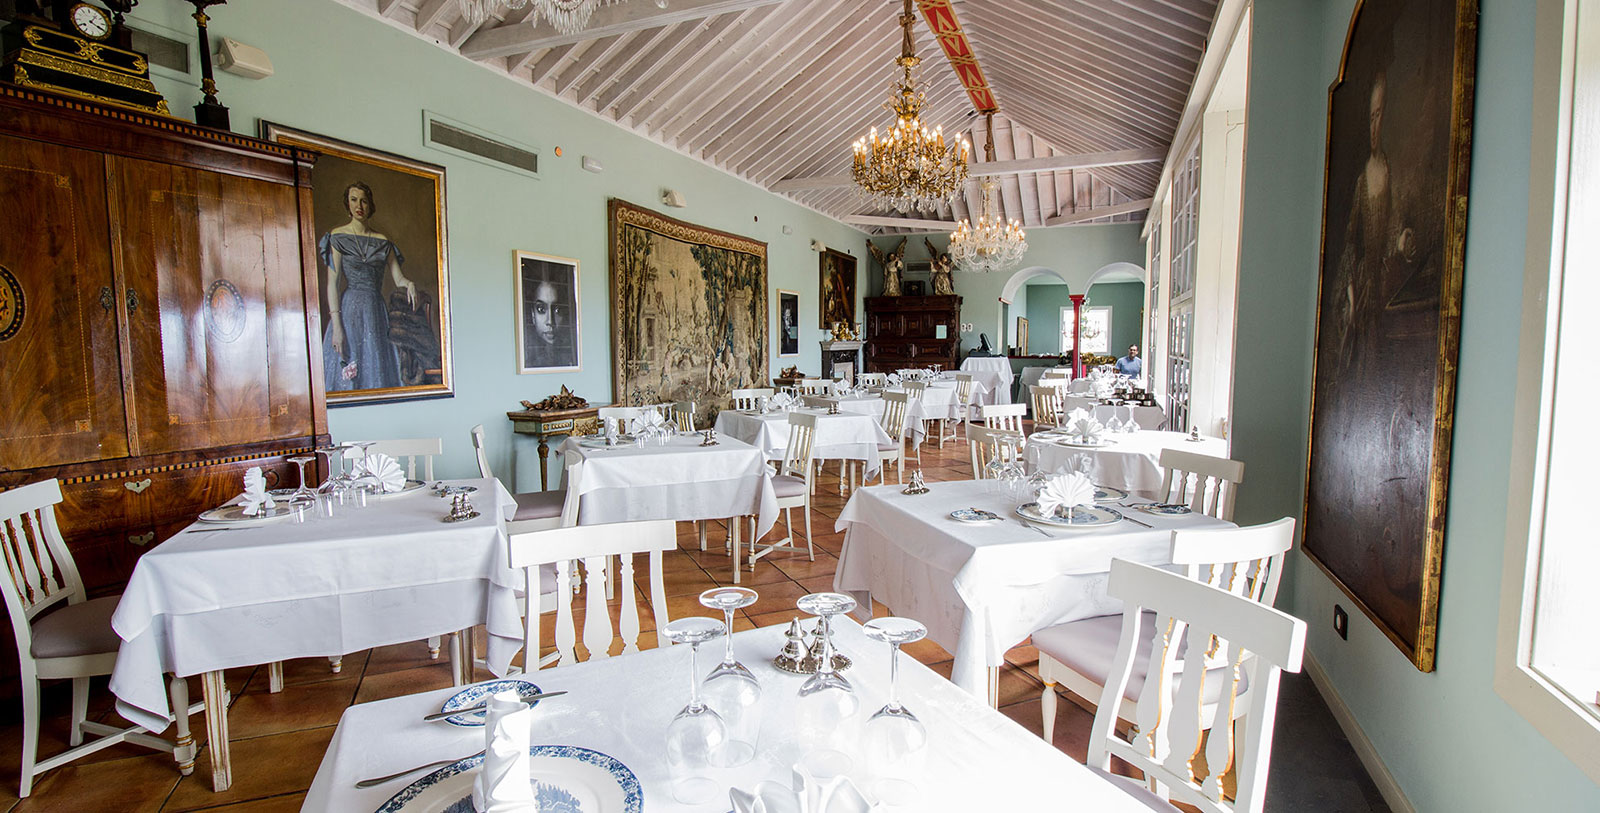 Image of El Sitio Restaurant, Hotel Hacienda de Abajo, 1493, Member of Historic Hotels Worldwide, Santa Cruz de Tenerife, Spain, Dining